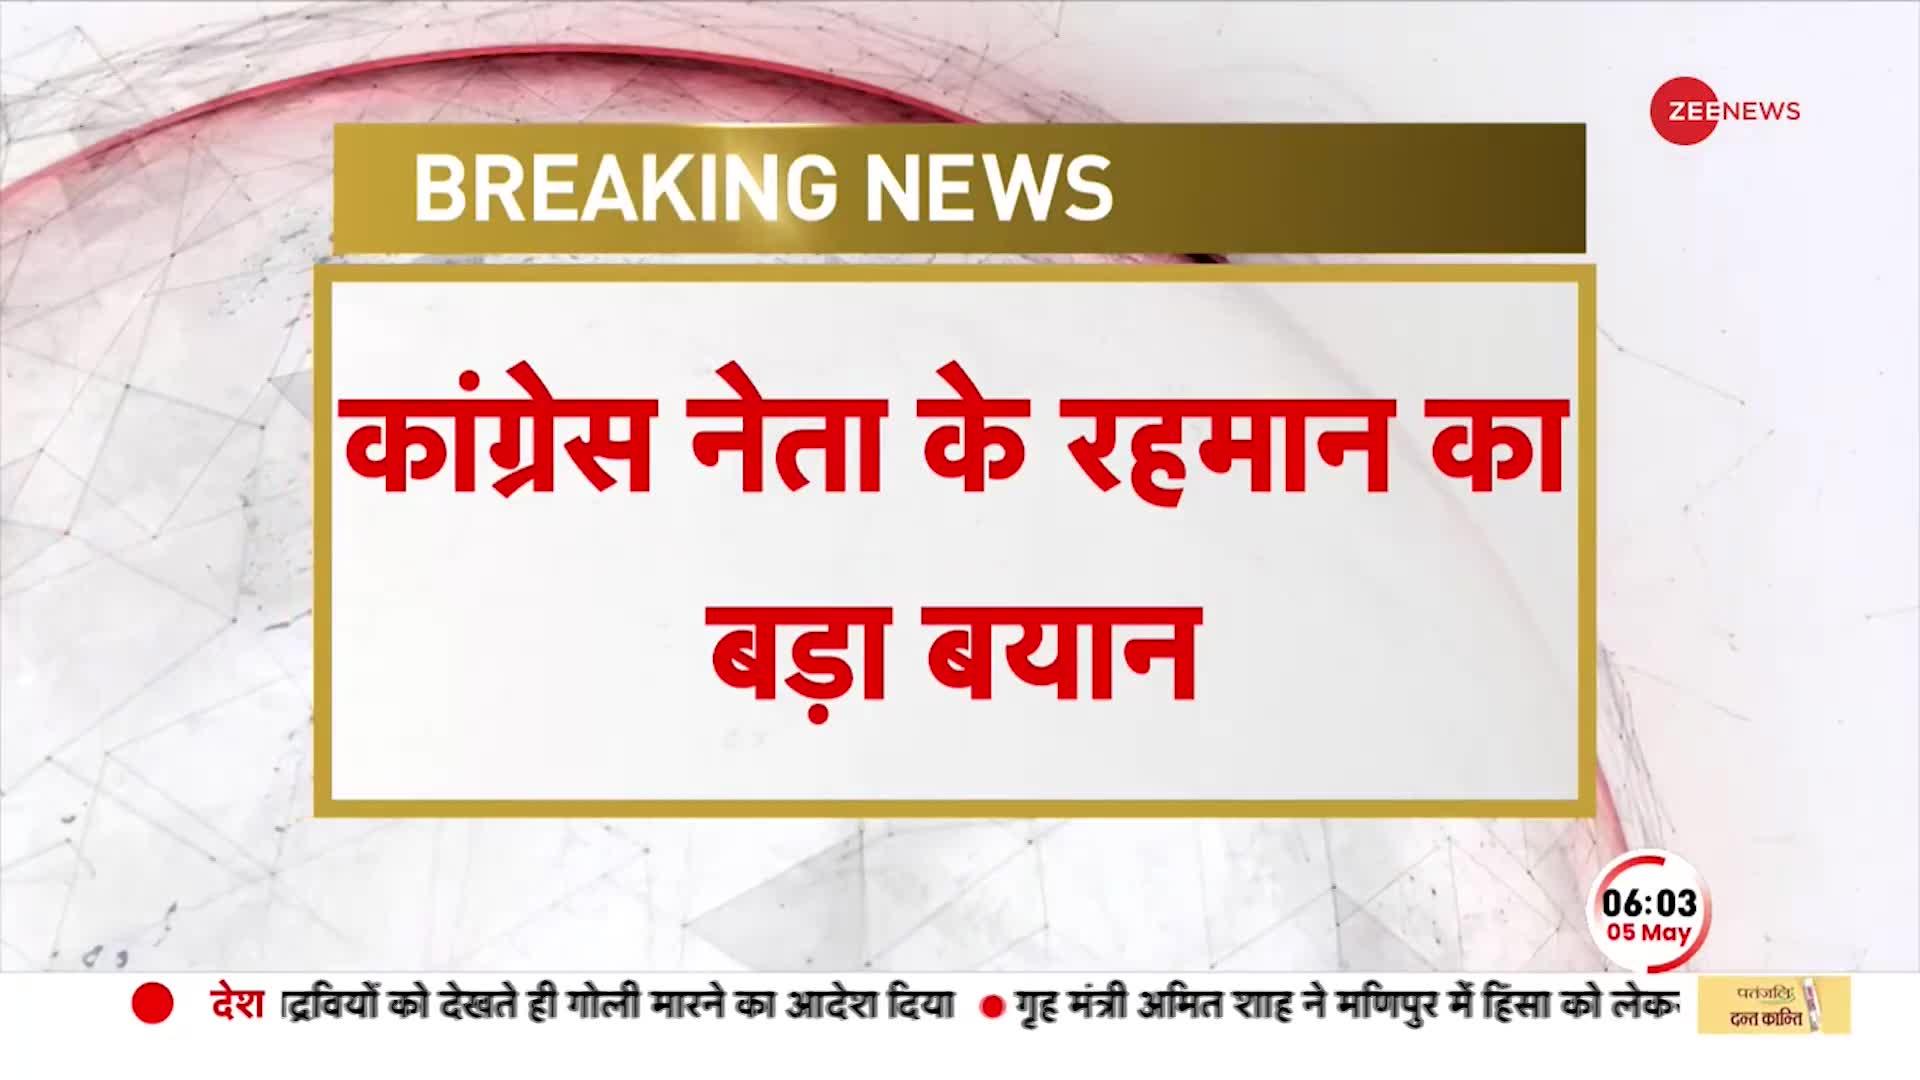 BREAKING NEWS: Congress नेता K Rahman Khan का बड़ा दावा, 'PM बोले बूथ में जय बजरंगबली बोलो'